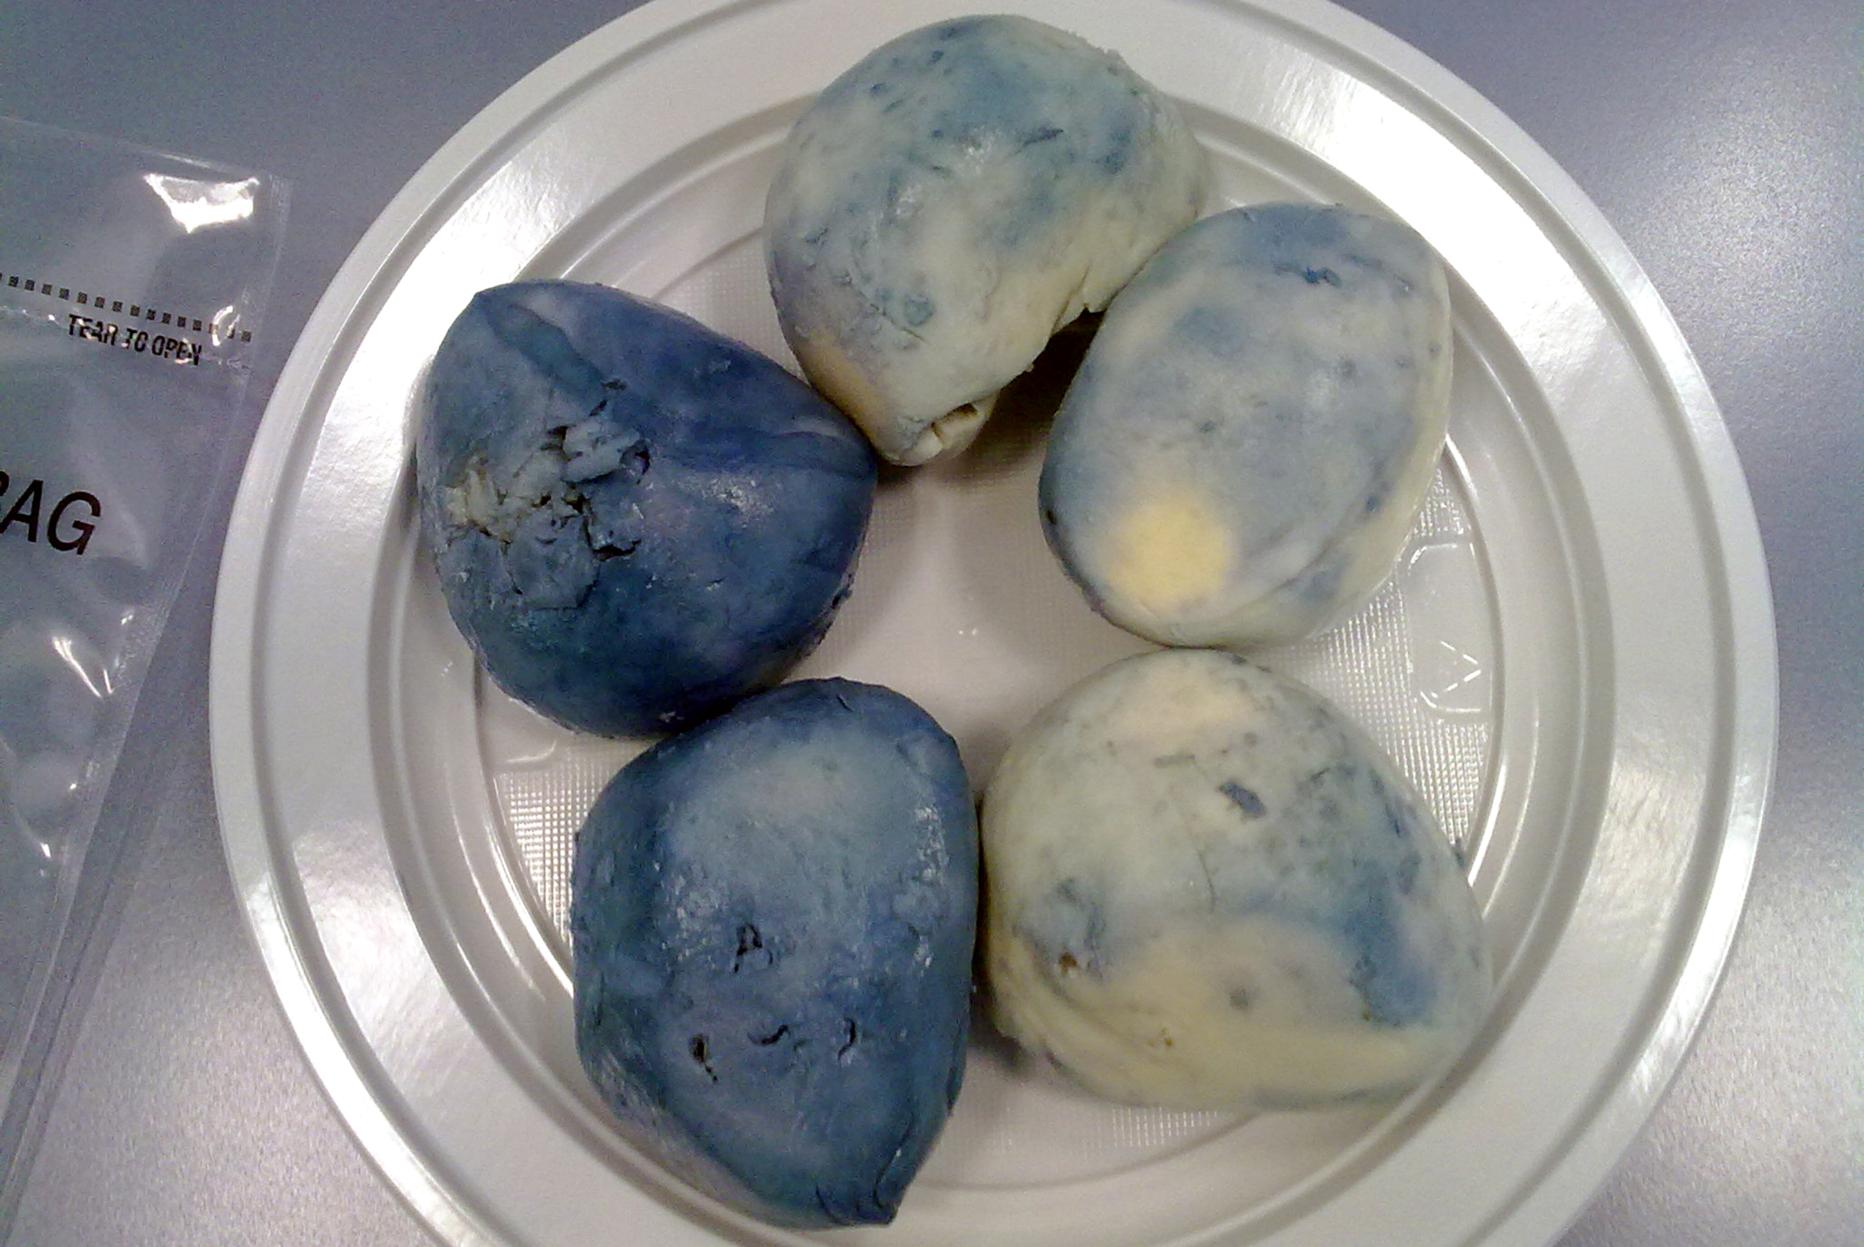  Una proteina del latte contro la “mozzarella blu”